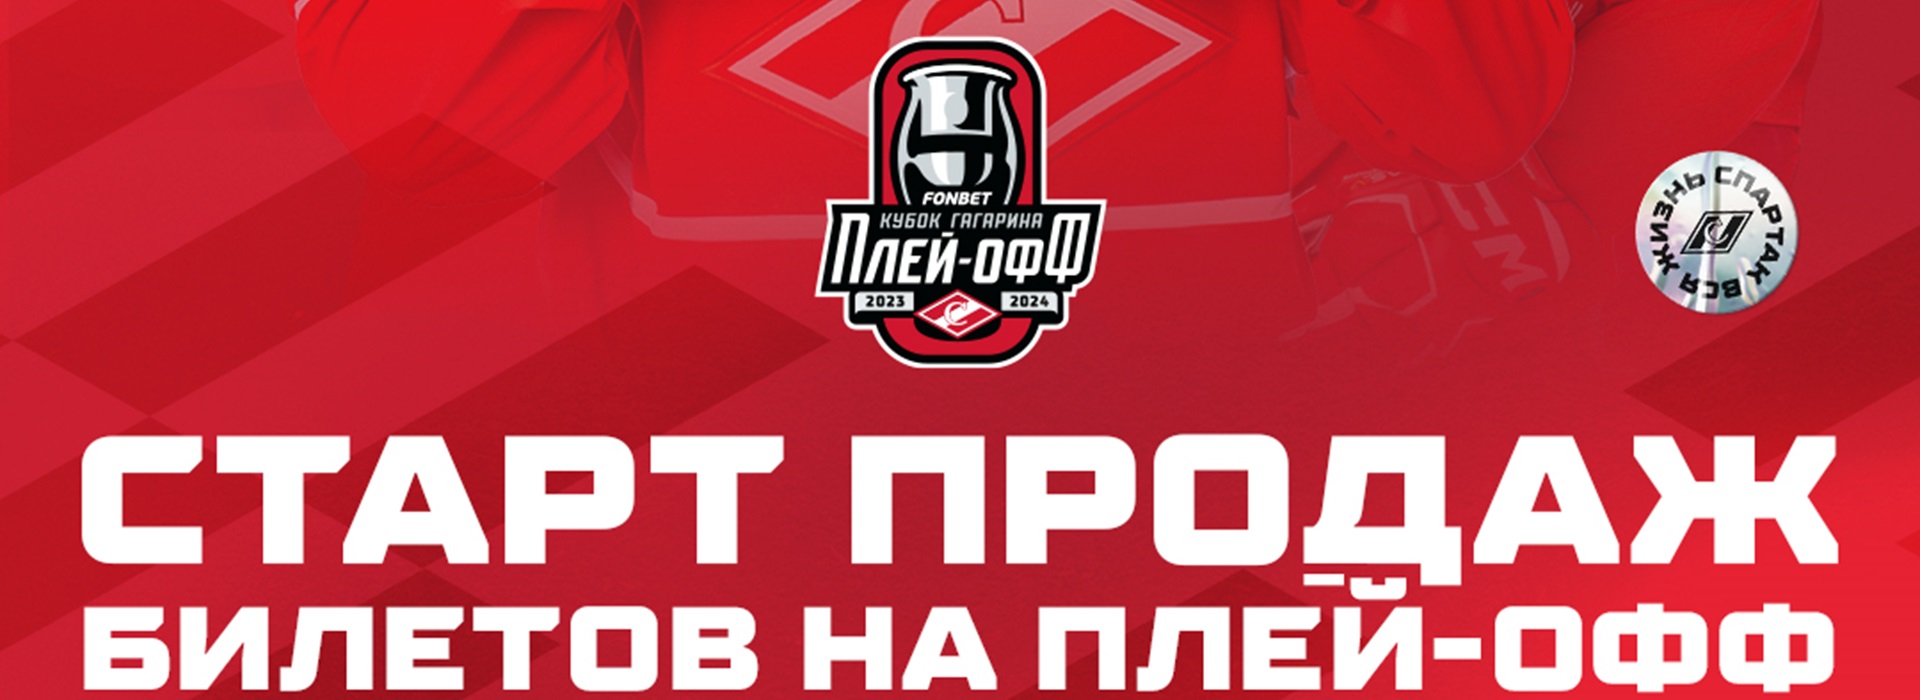 ХК «Спартак» начинает продажу билетов на матчи плей-офф!